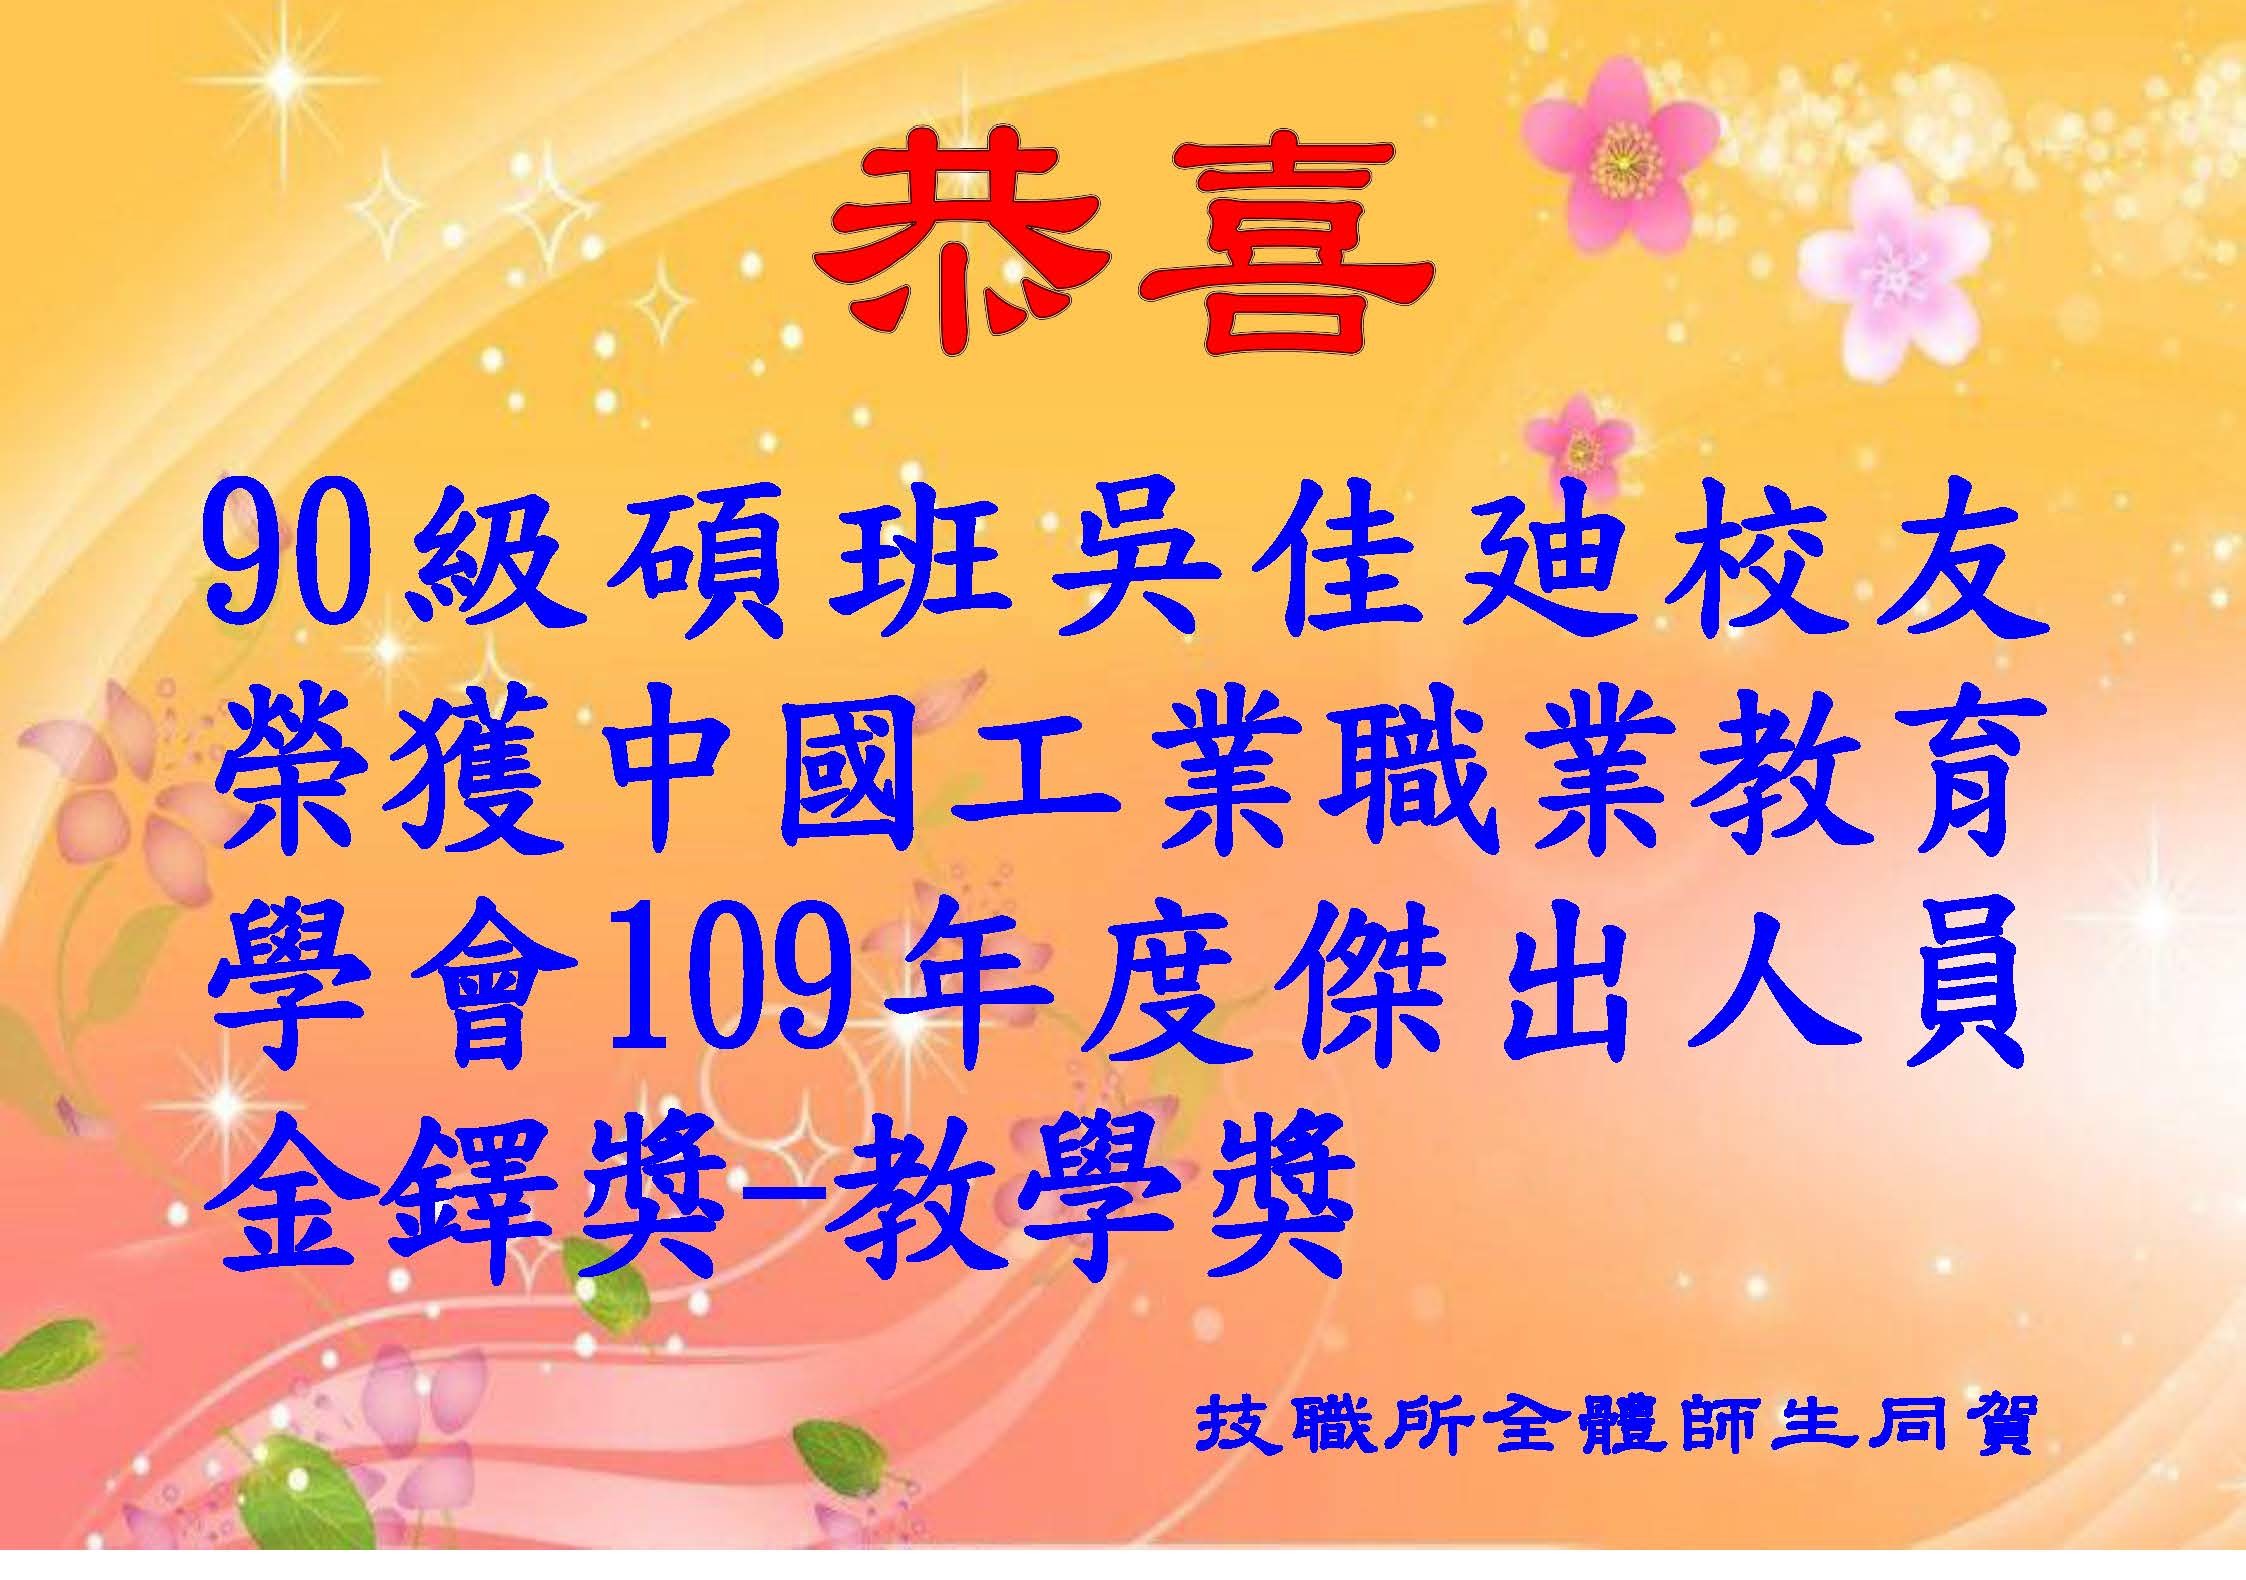 90級碩班吳佳廸校友榮獲中國工業職業教育學會109年度傑出人員金鐸獎-教學獎